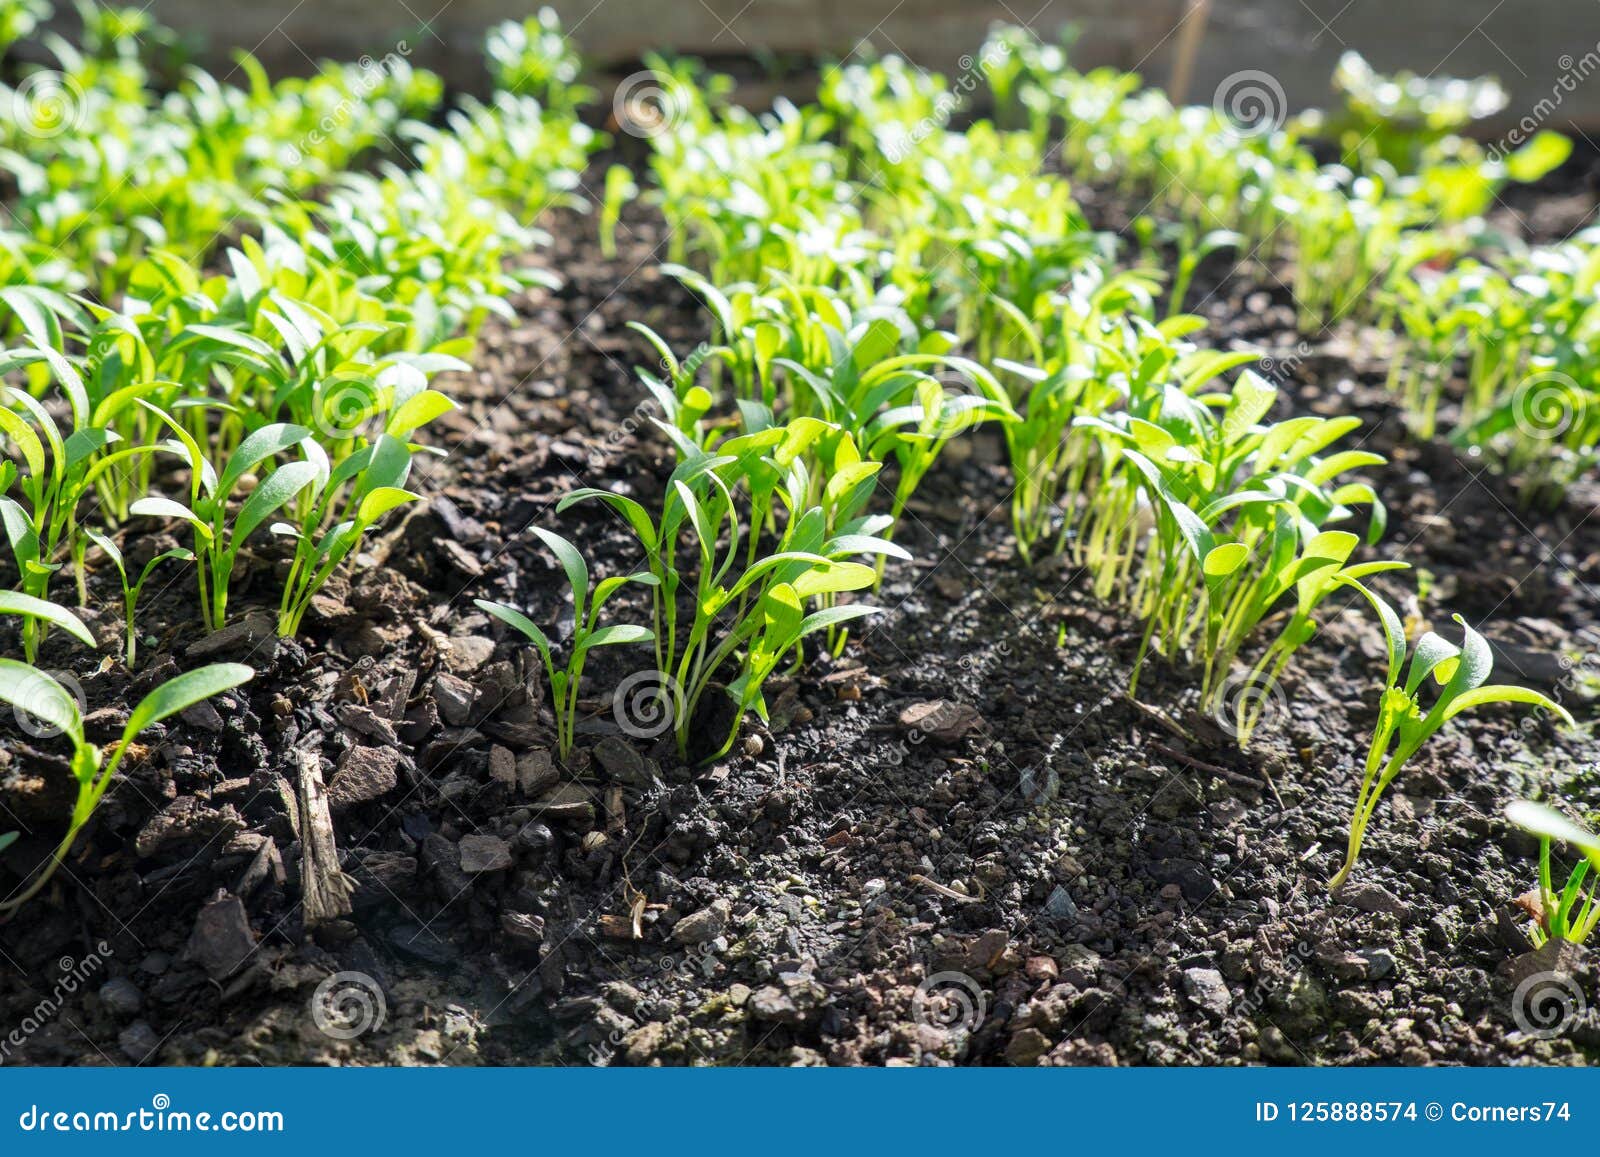 cilantro seedlings